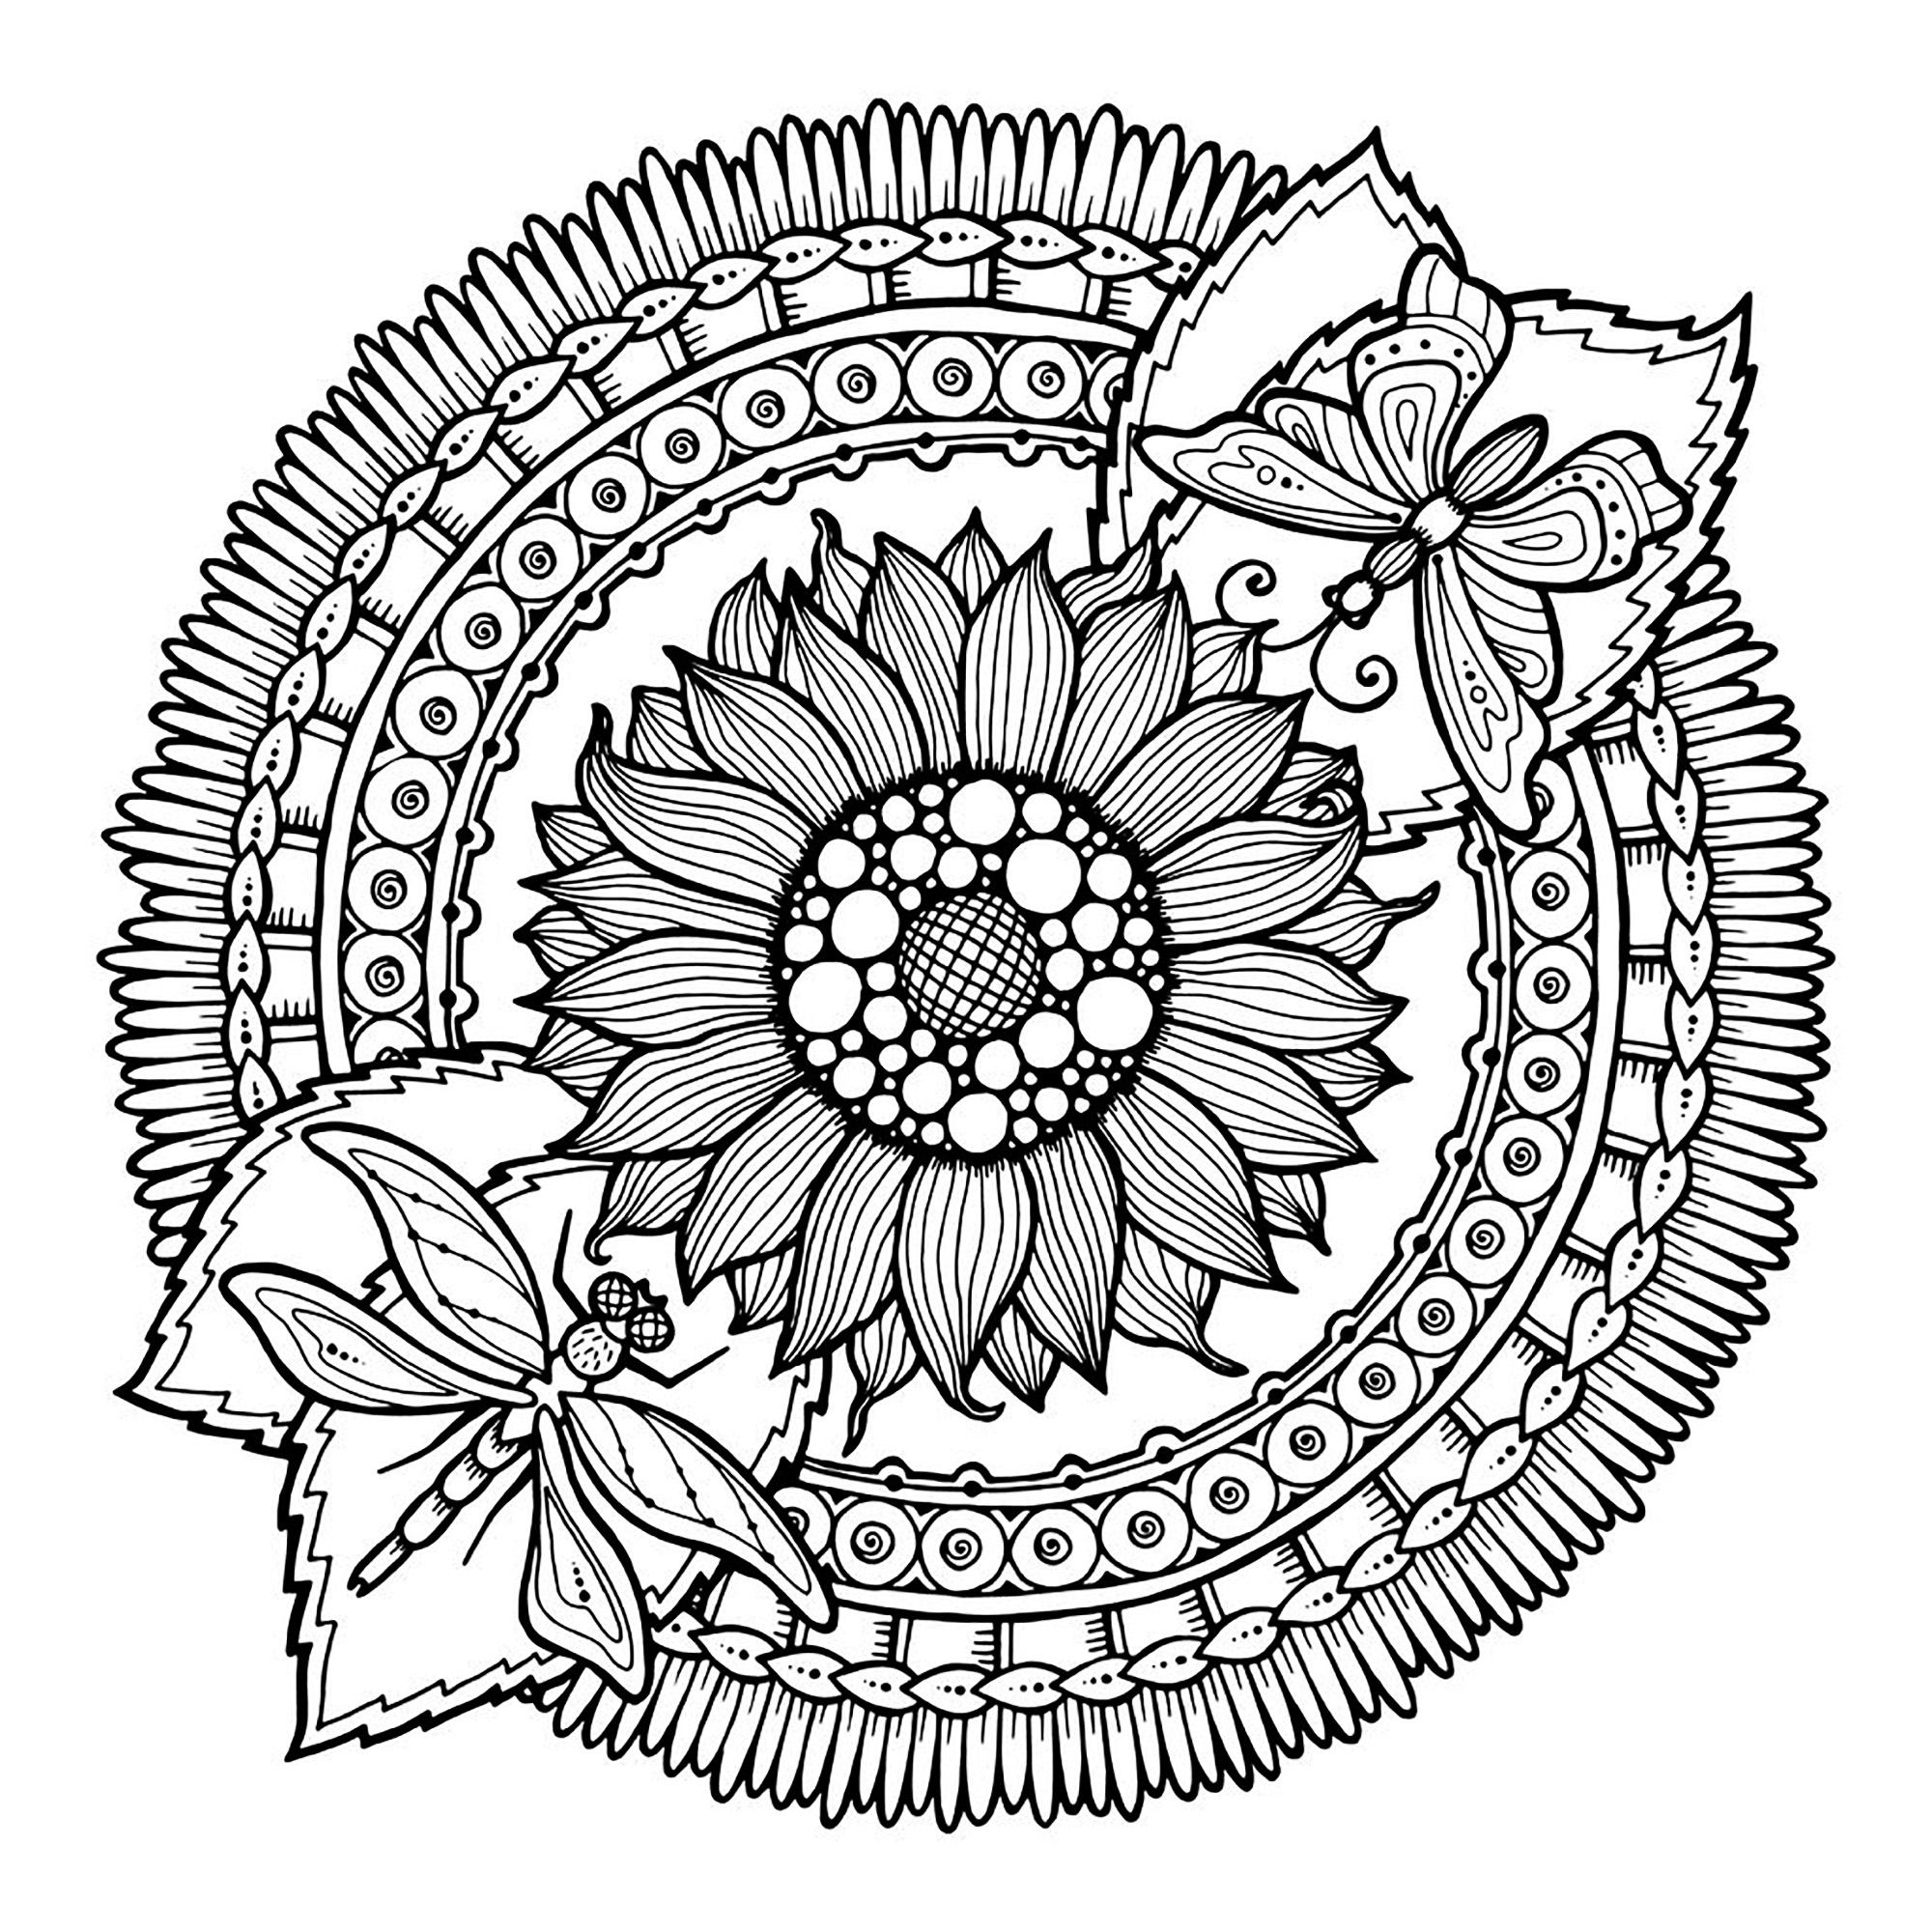 Préparez vos feutres et crayons pour réaliser la mise en couleur de ce Mandala 'tournesols et papillons' plein de petits détails et zones intriquées.